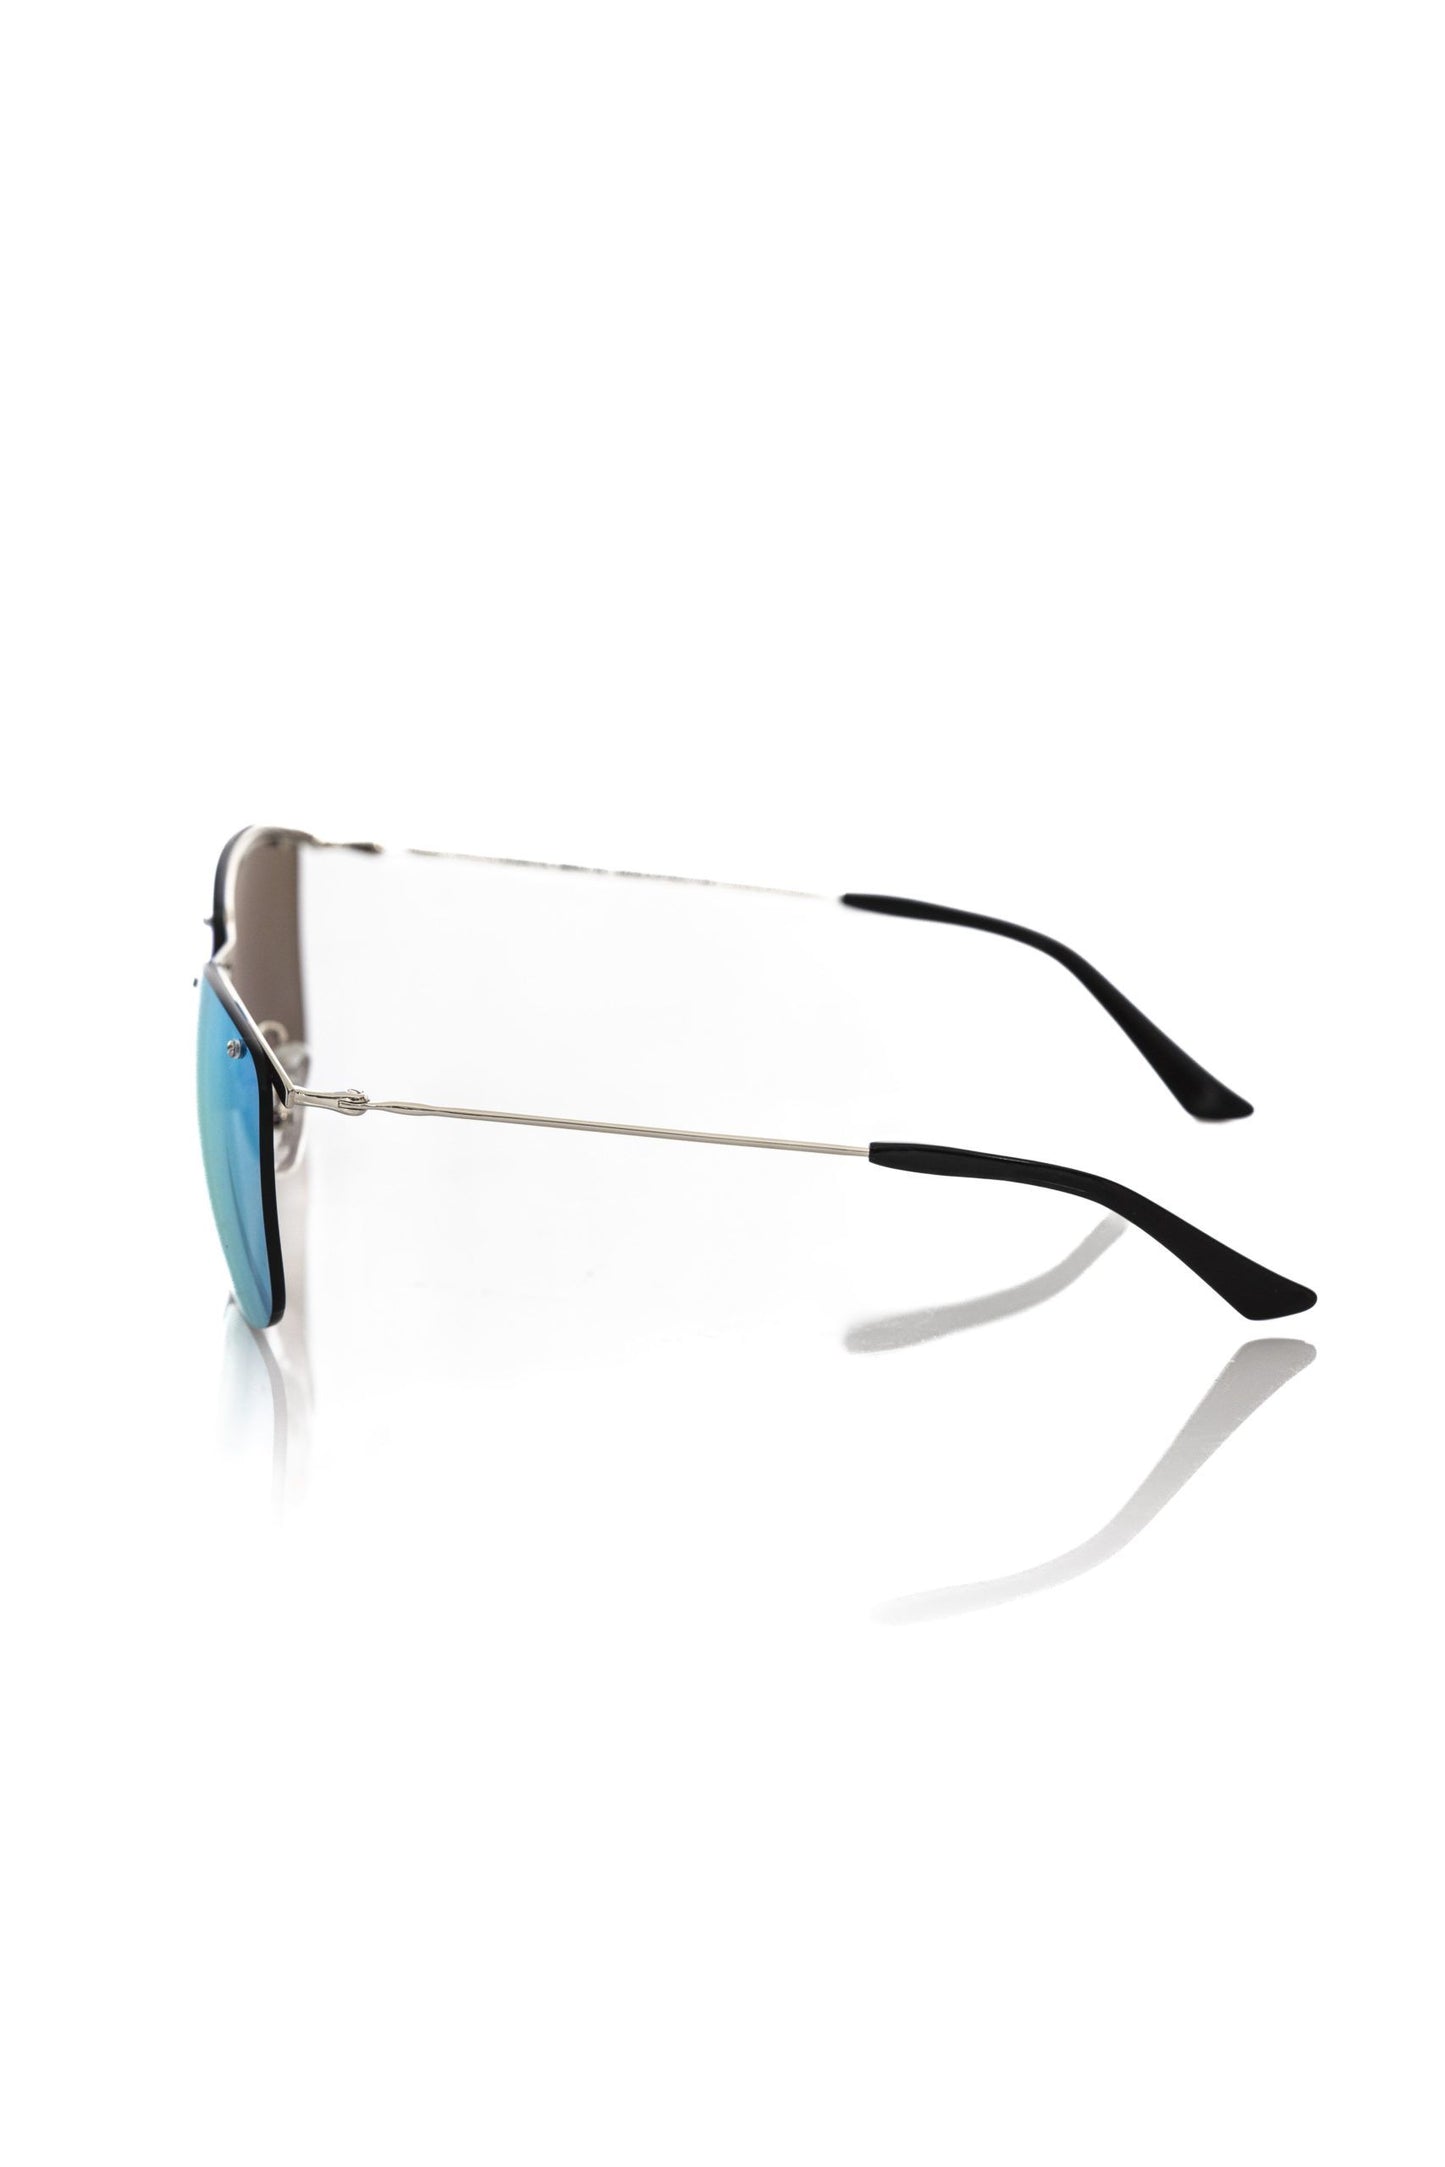 Frankie Morello FRMO-22137 Silver Metallic Fibre Sunglasses